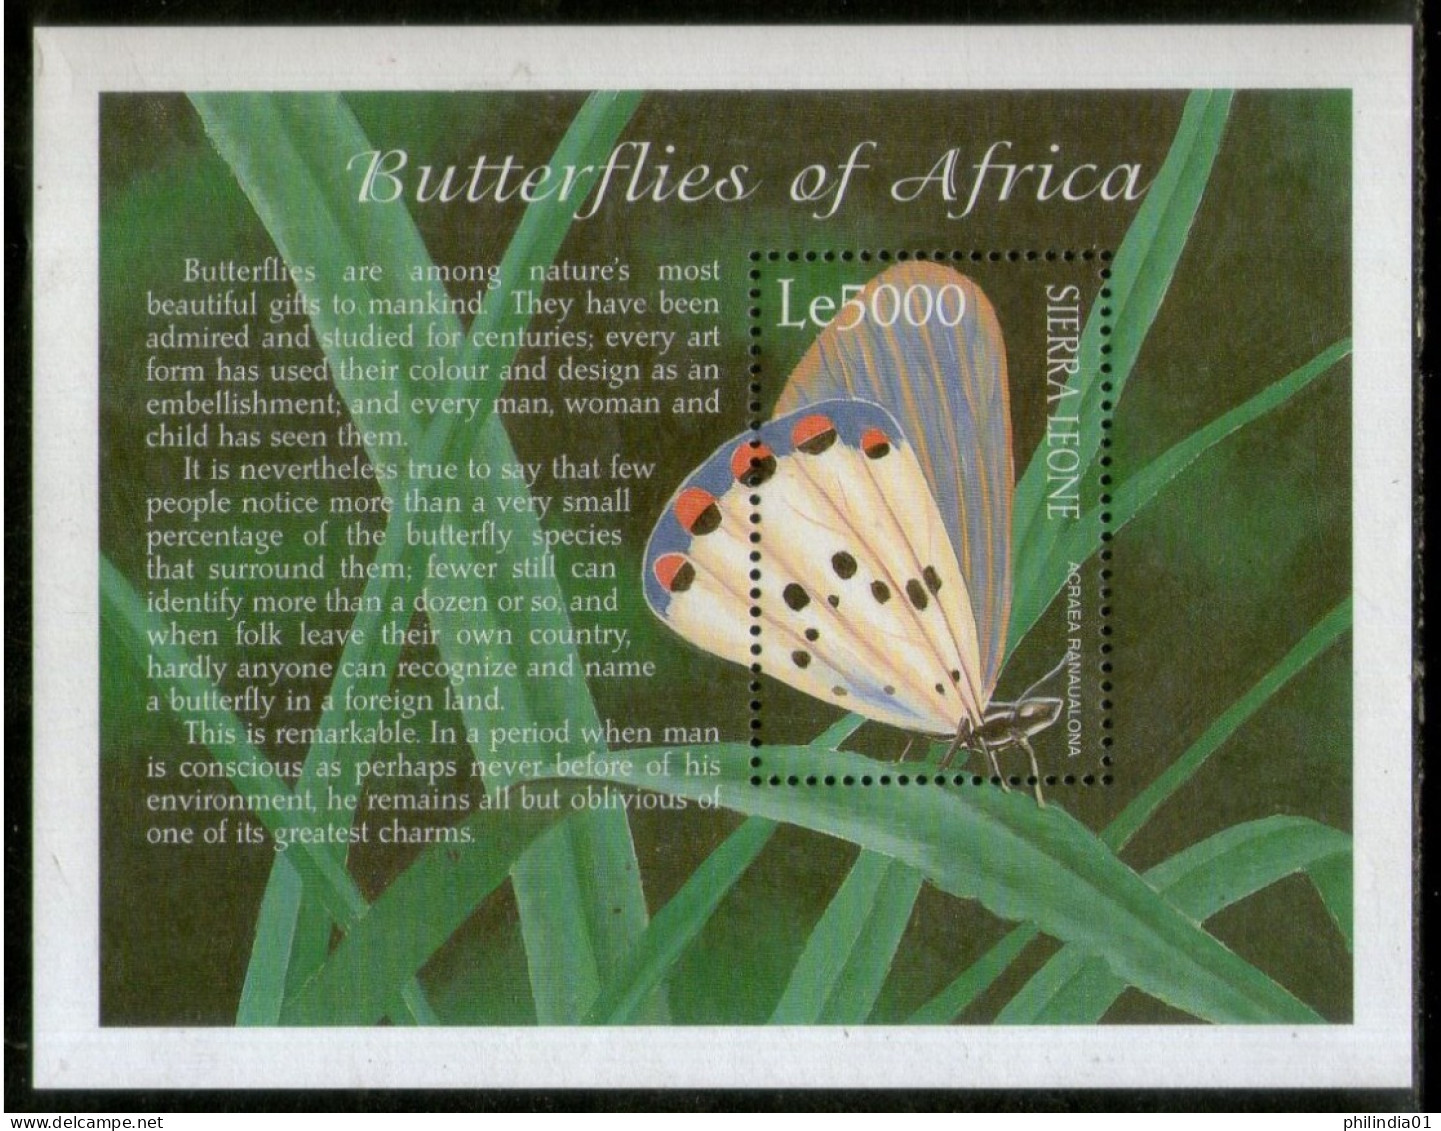 Sierra Leone 2001 African Butterflies Moth Insect Sc 2437 M/s MNH # 5619 - Schmetterlinge